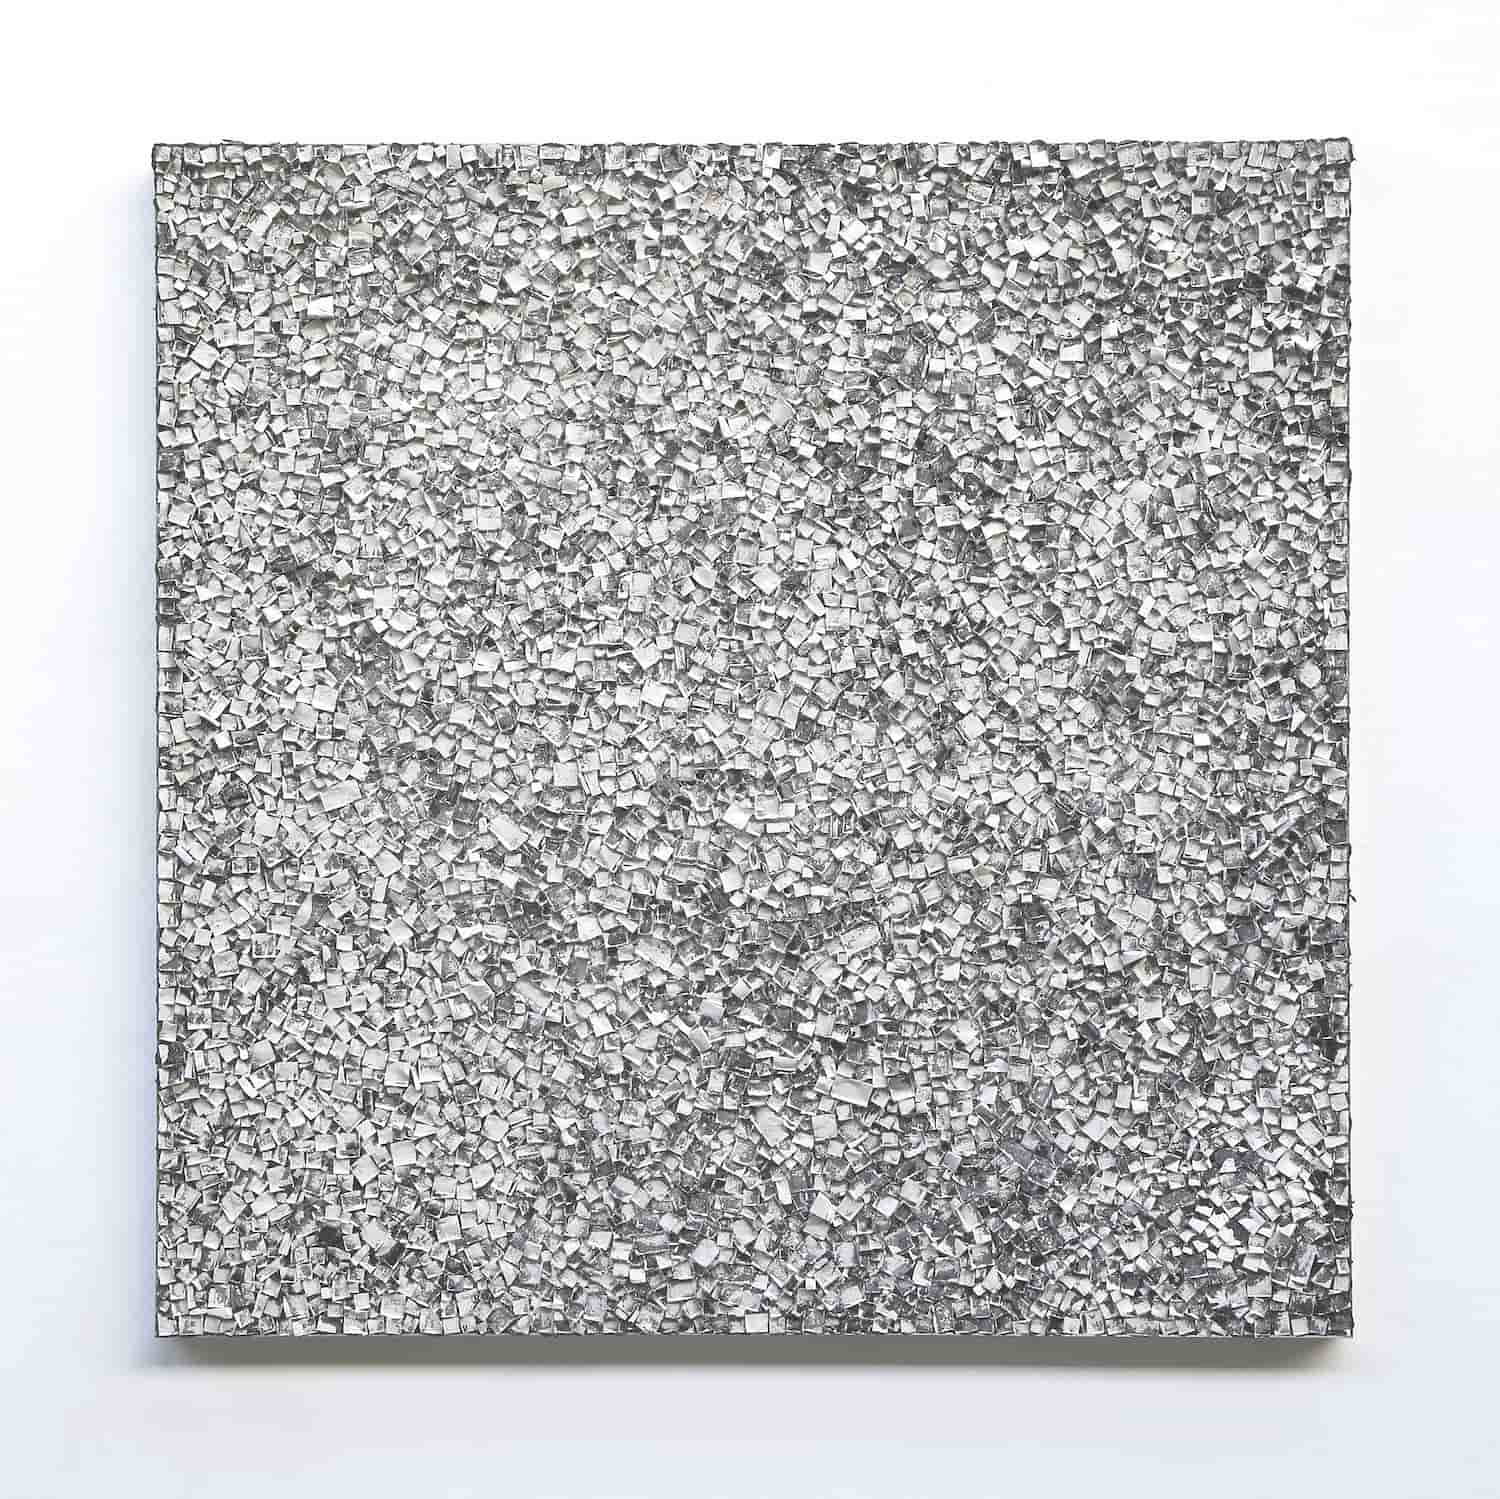 „o. T.“, ABR-Kreideabriss, 150 x 150 cm, 2019